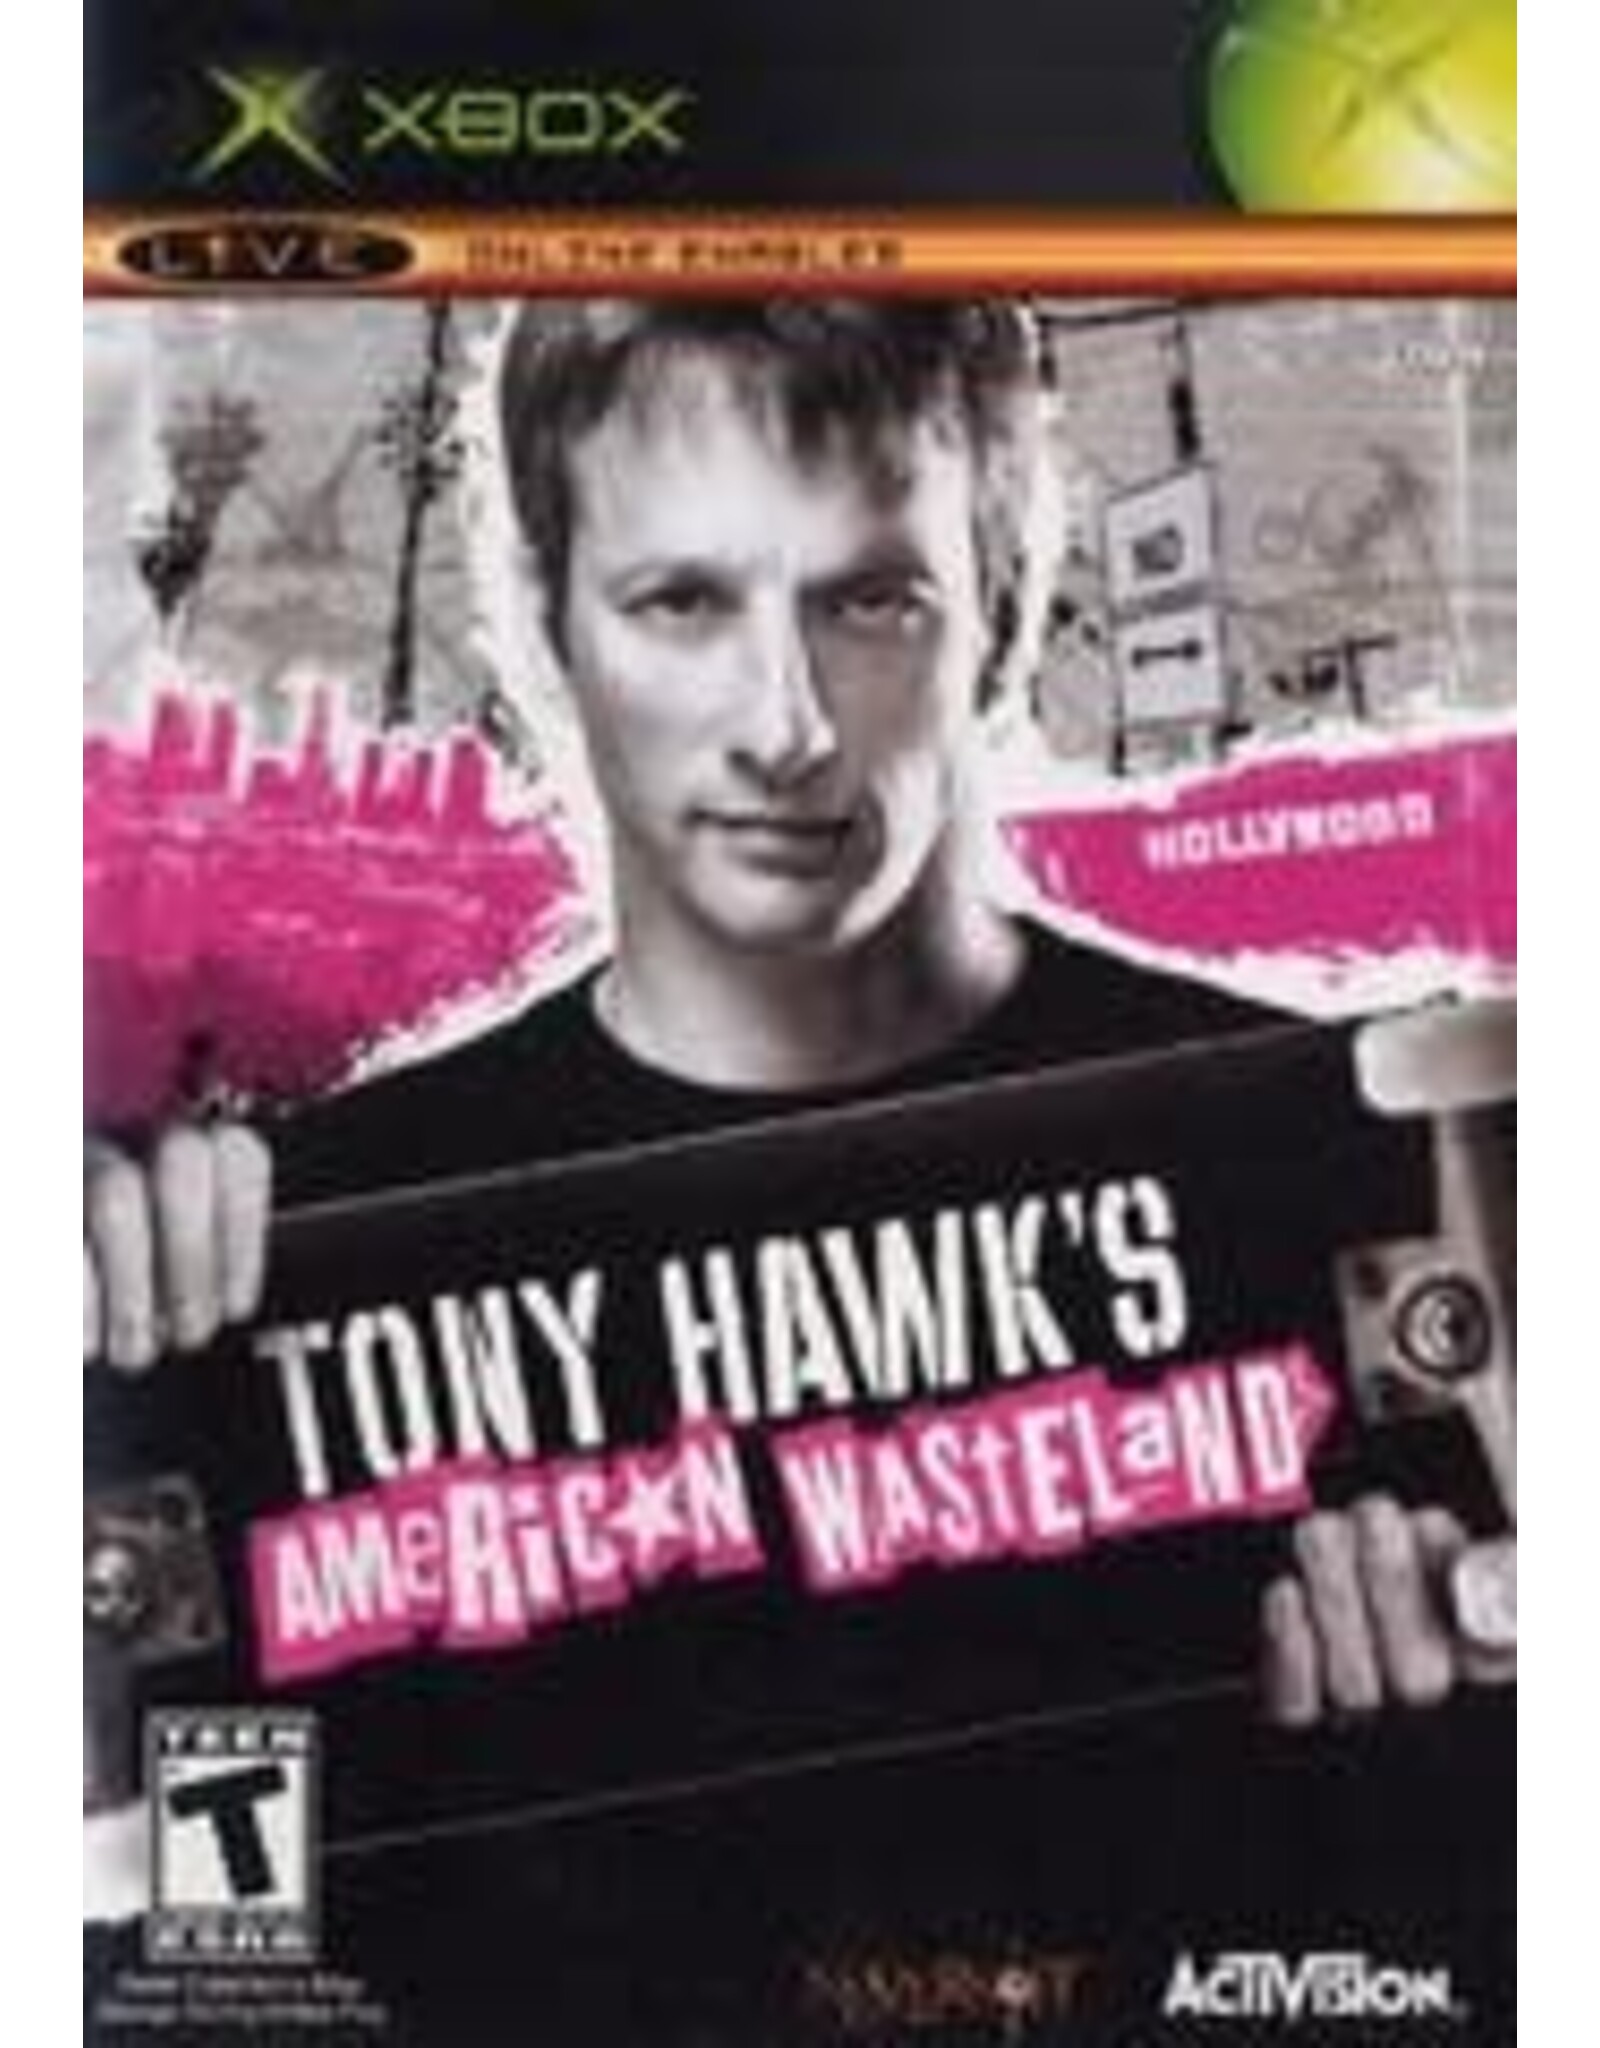 Xbox Tony Hawk American Wasteland (Used)